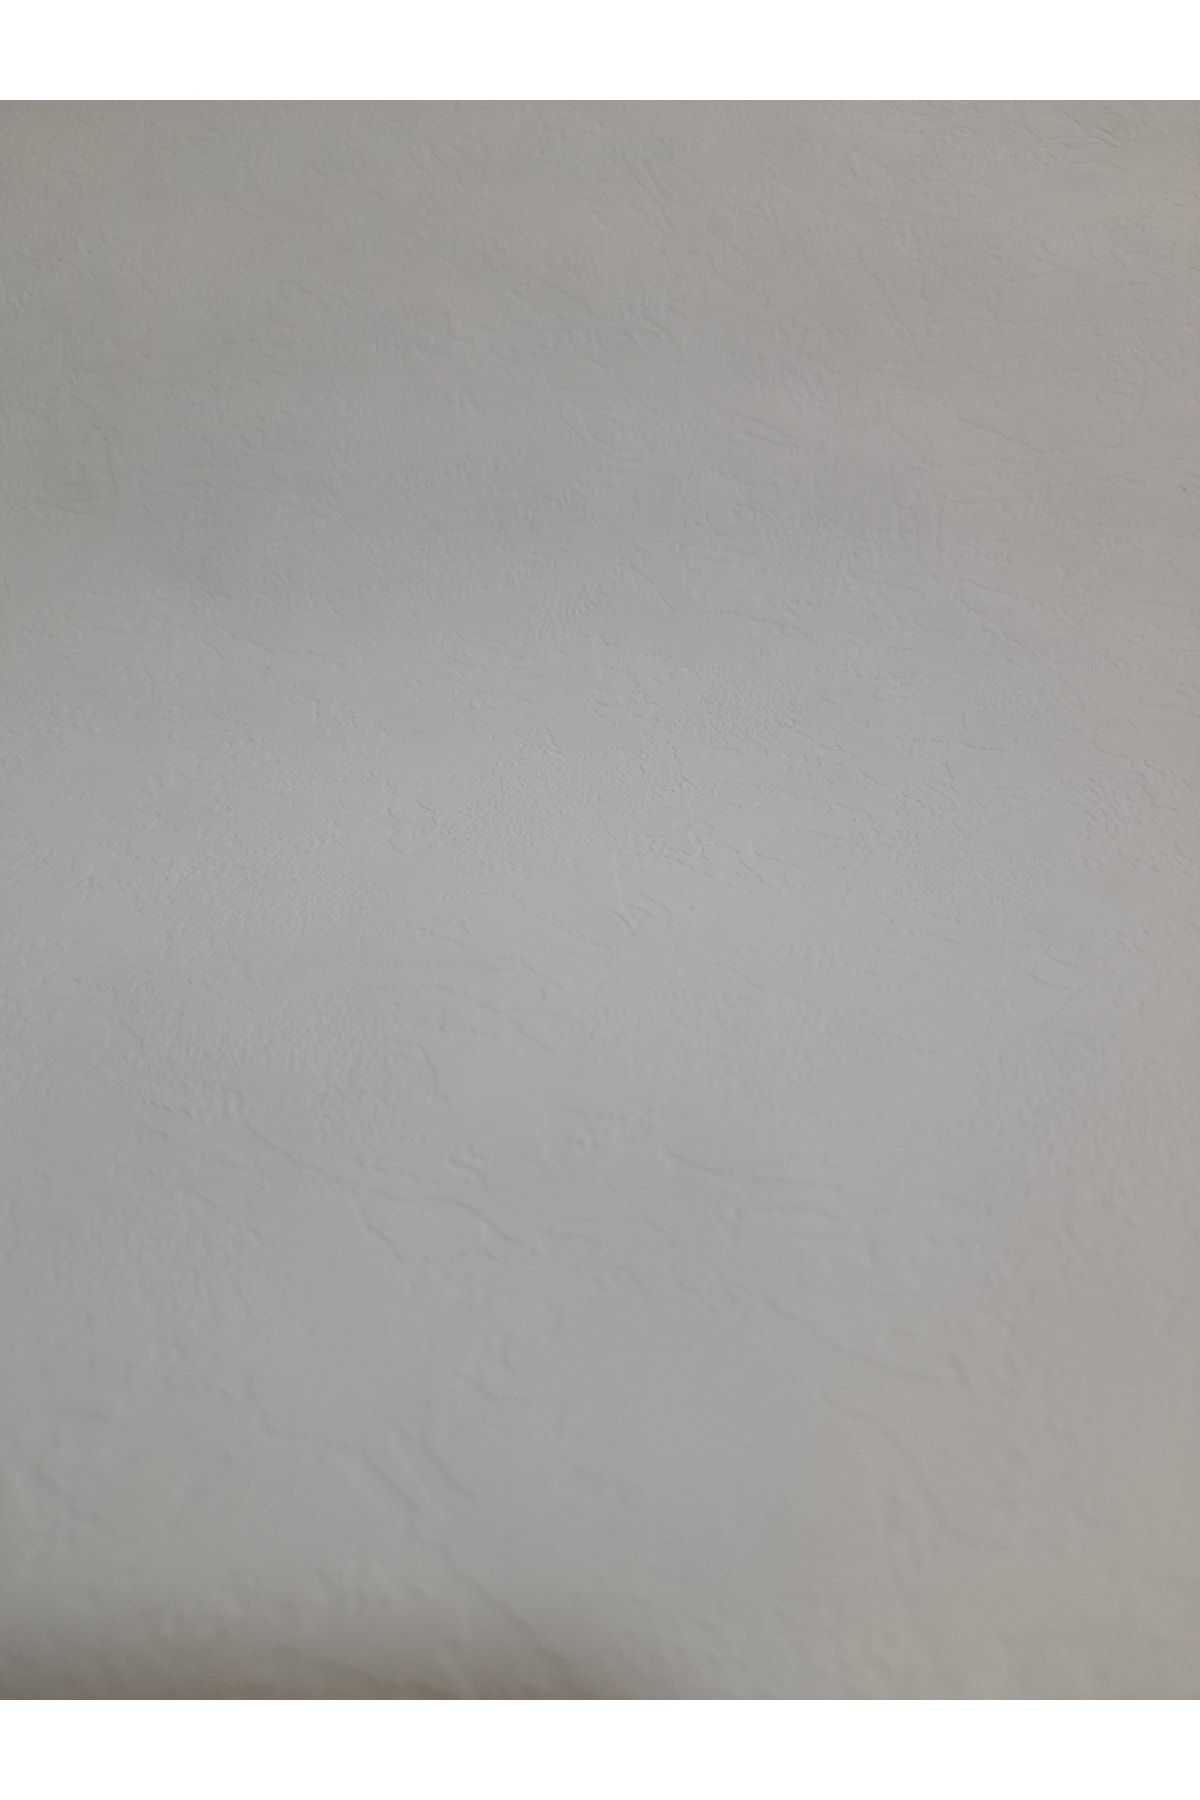 oskar Hafif Kabartmalı Kendinden Desenli Beyaz Duvar Kağıdı 5m2